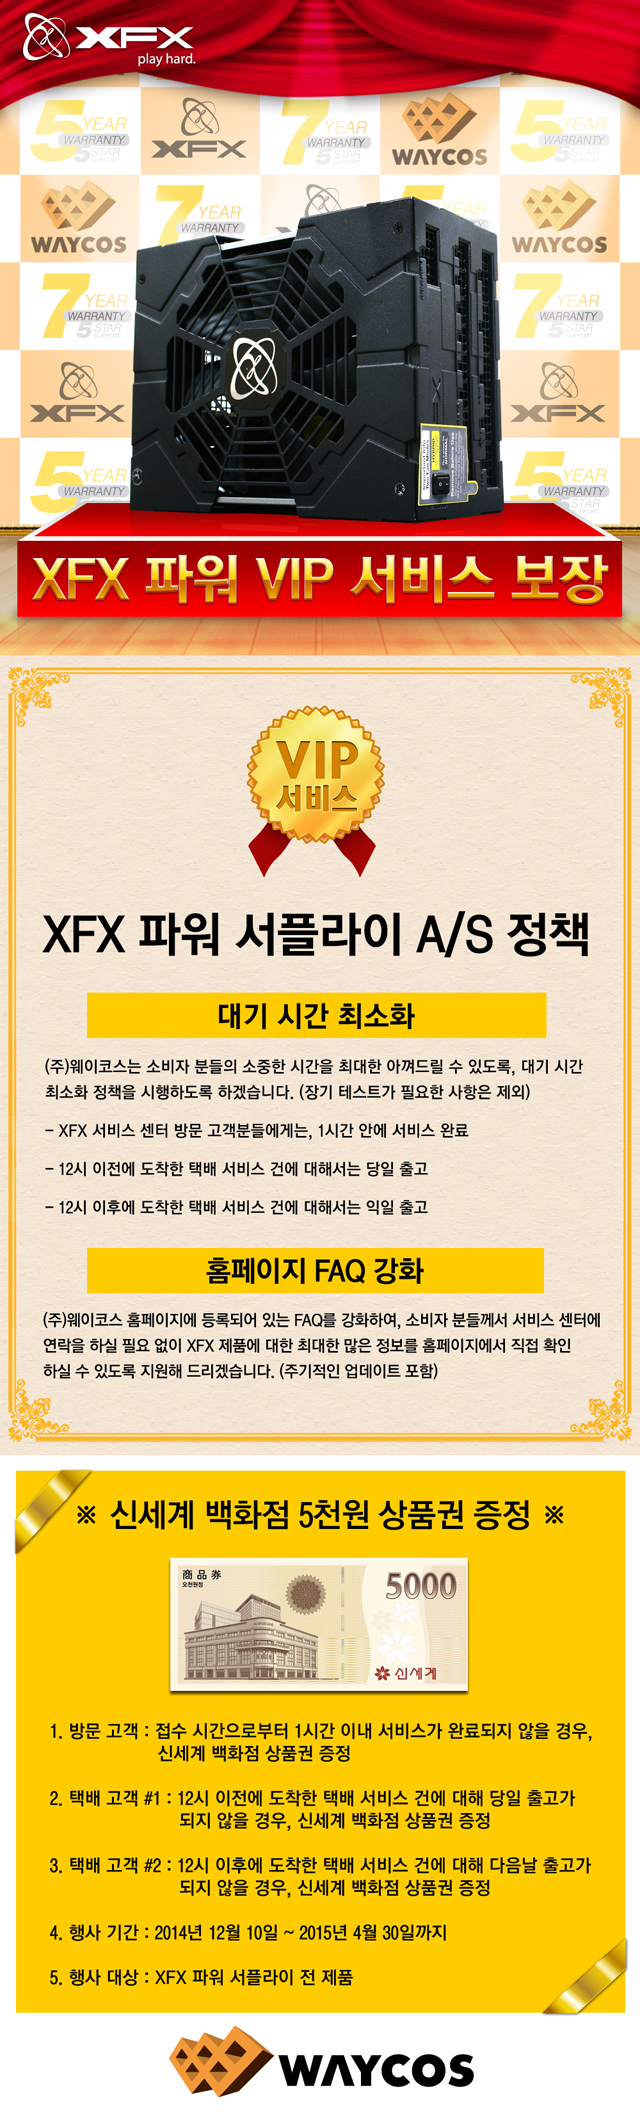 웨이코스, 고성능 XFX 파워 “VIP 서비스 보장 이벤트” 소식 